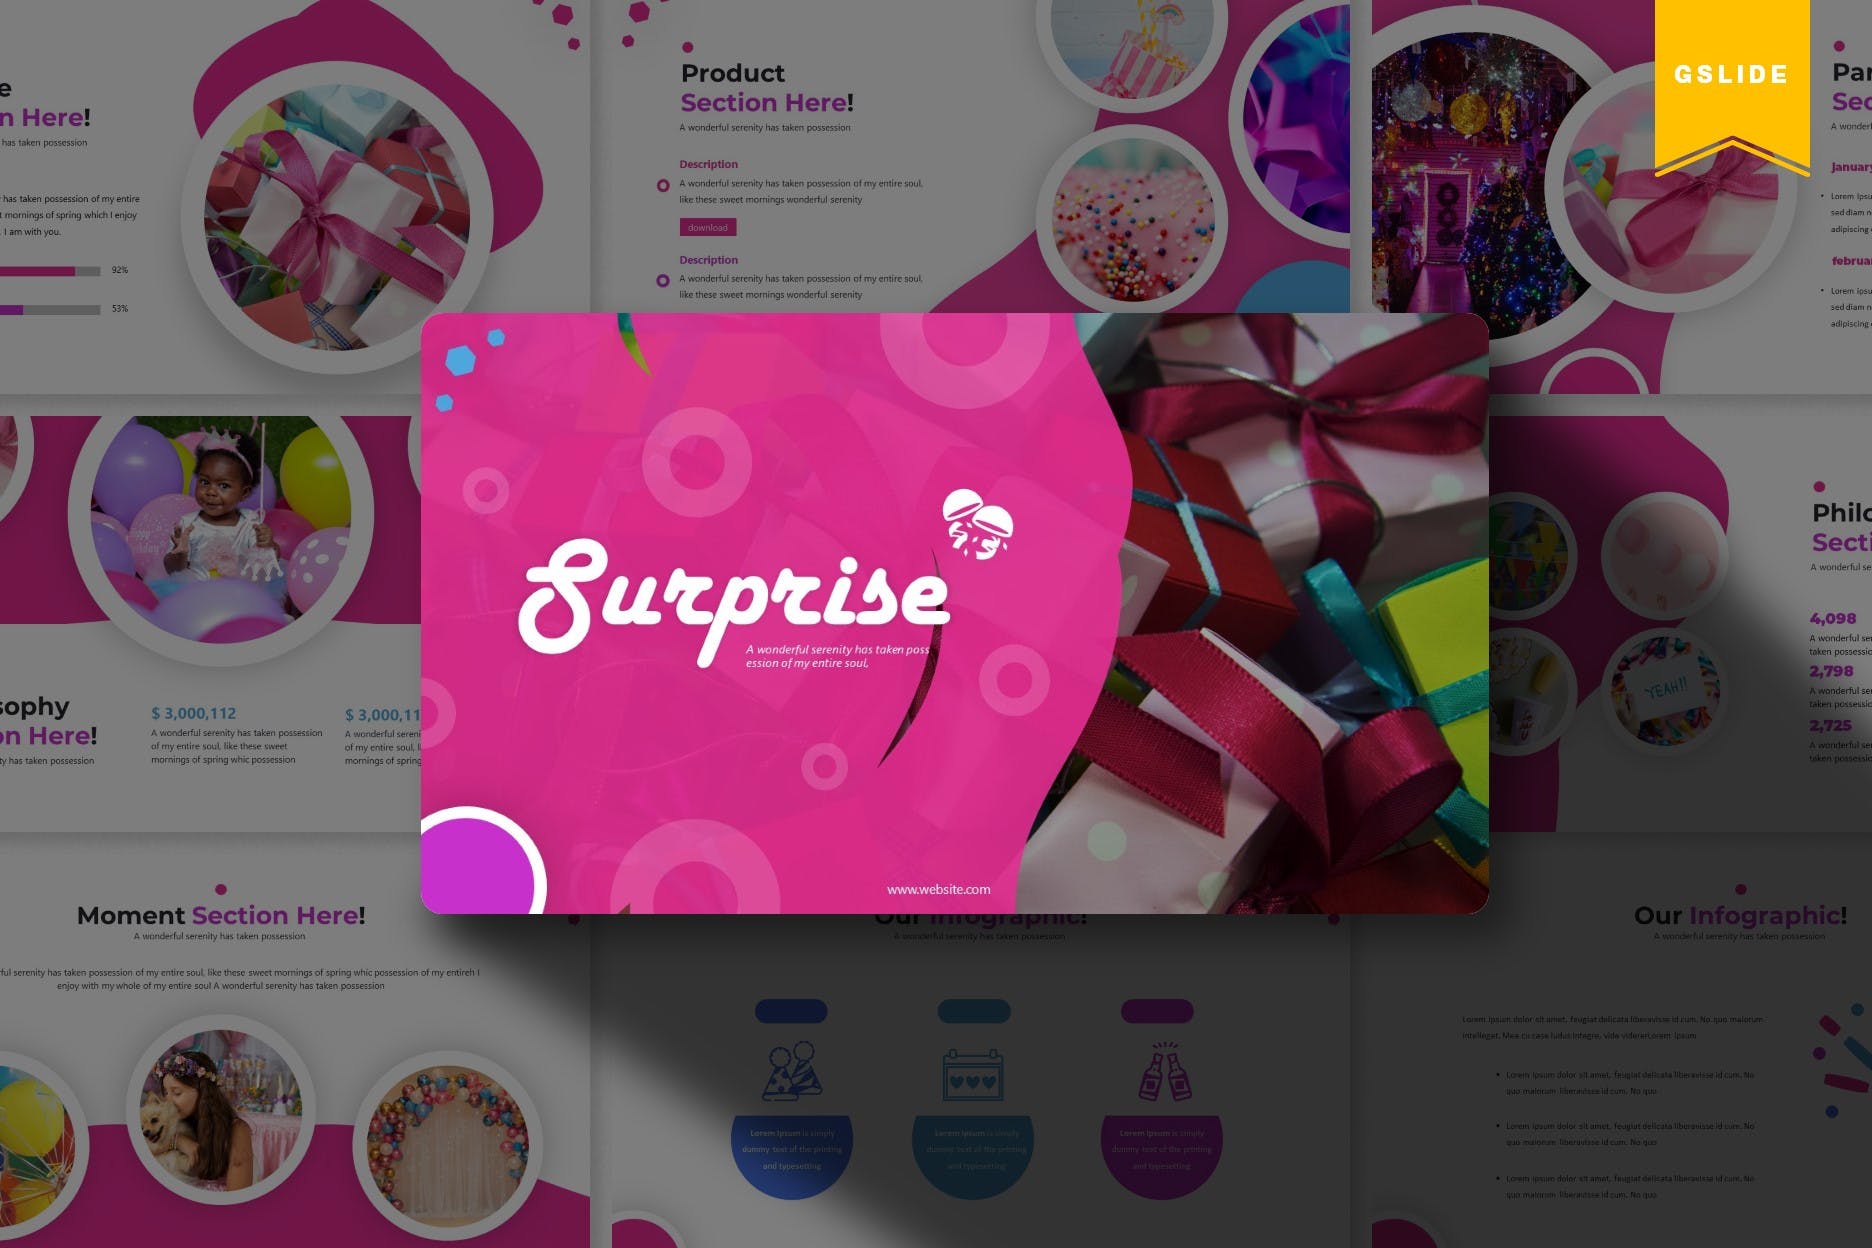 生日派对节日主题方案策划非凡图库精选谷歌演示模板 Sureprise | Google Slides Template插图